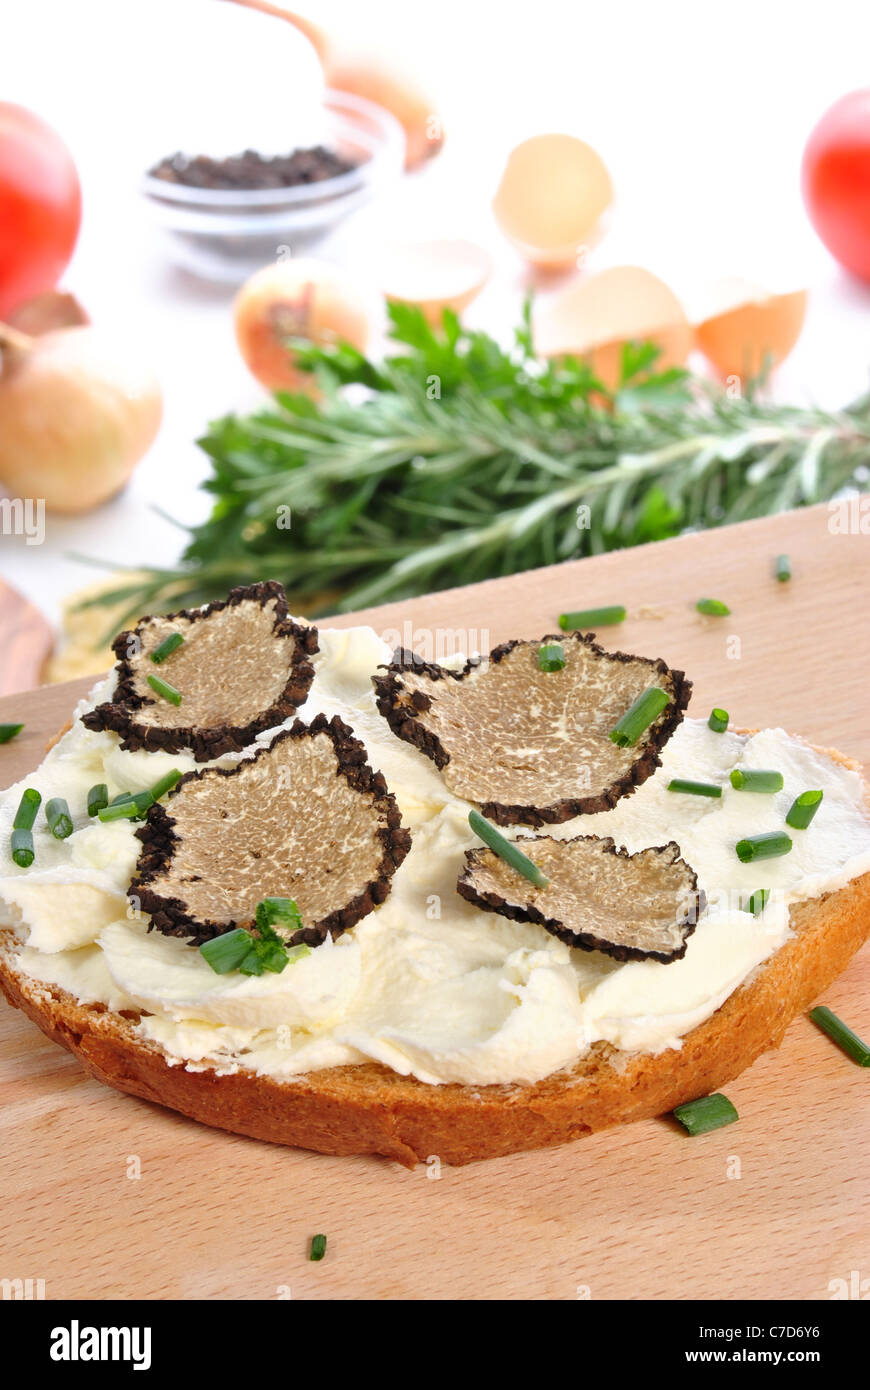 Grattugiato tartufo estivo con formaggio morbido su una fetta di pane Foto Stock